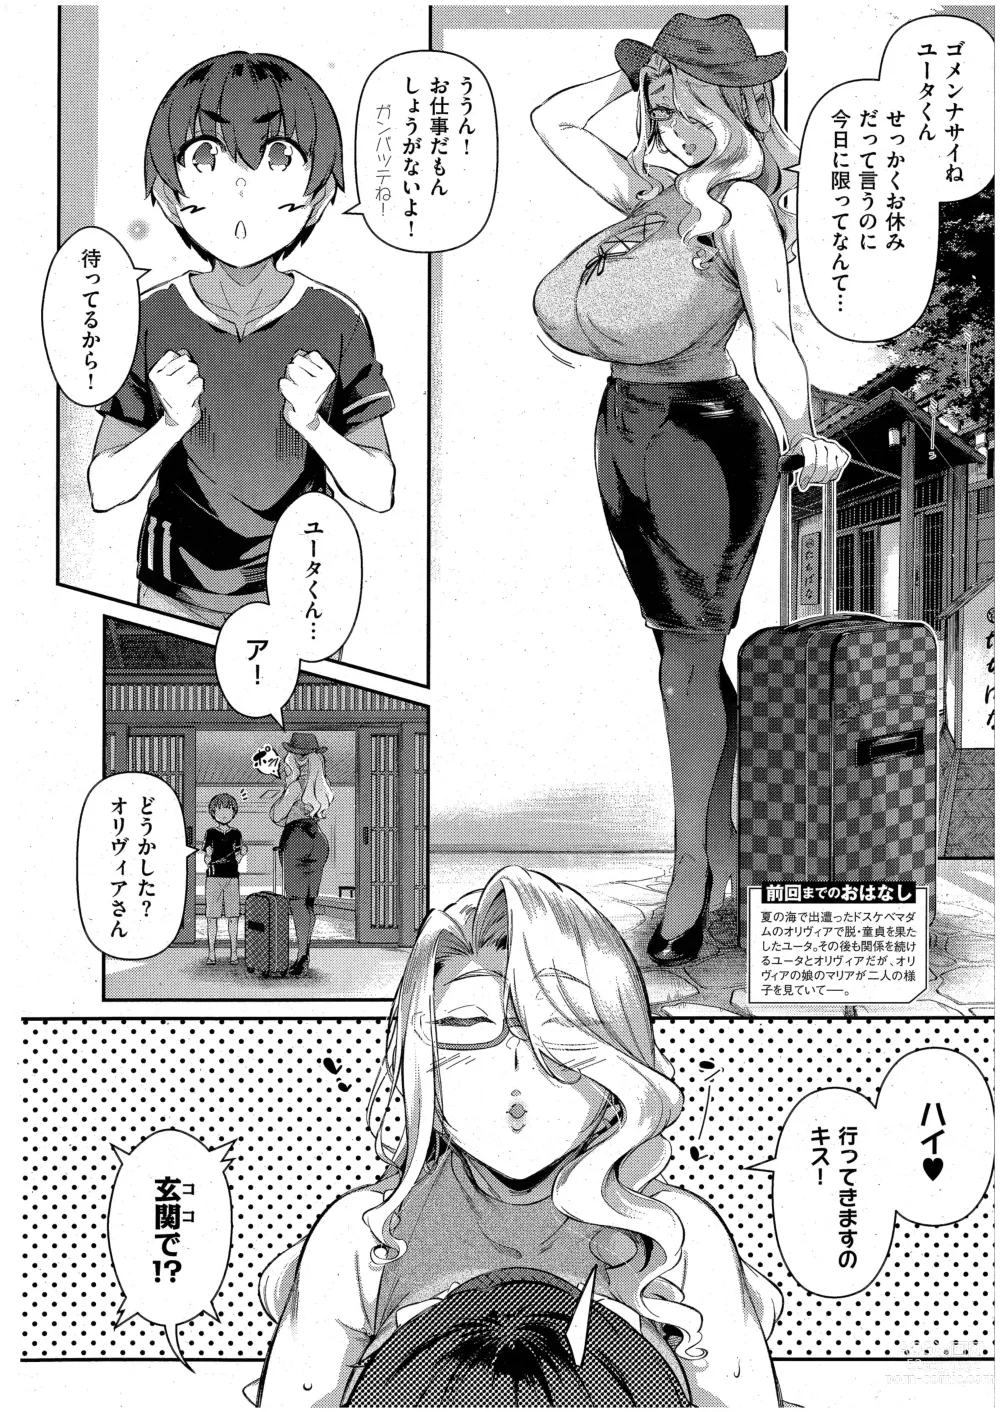 Page 2 of manga Last Summer 3